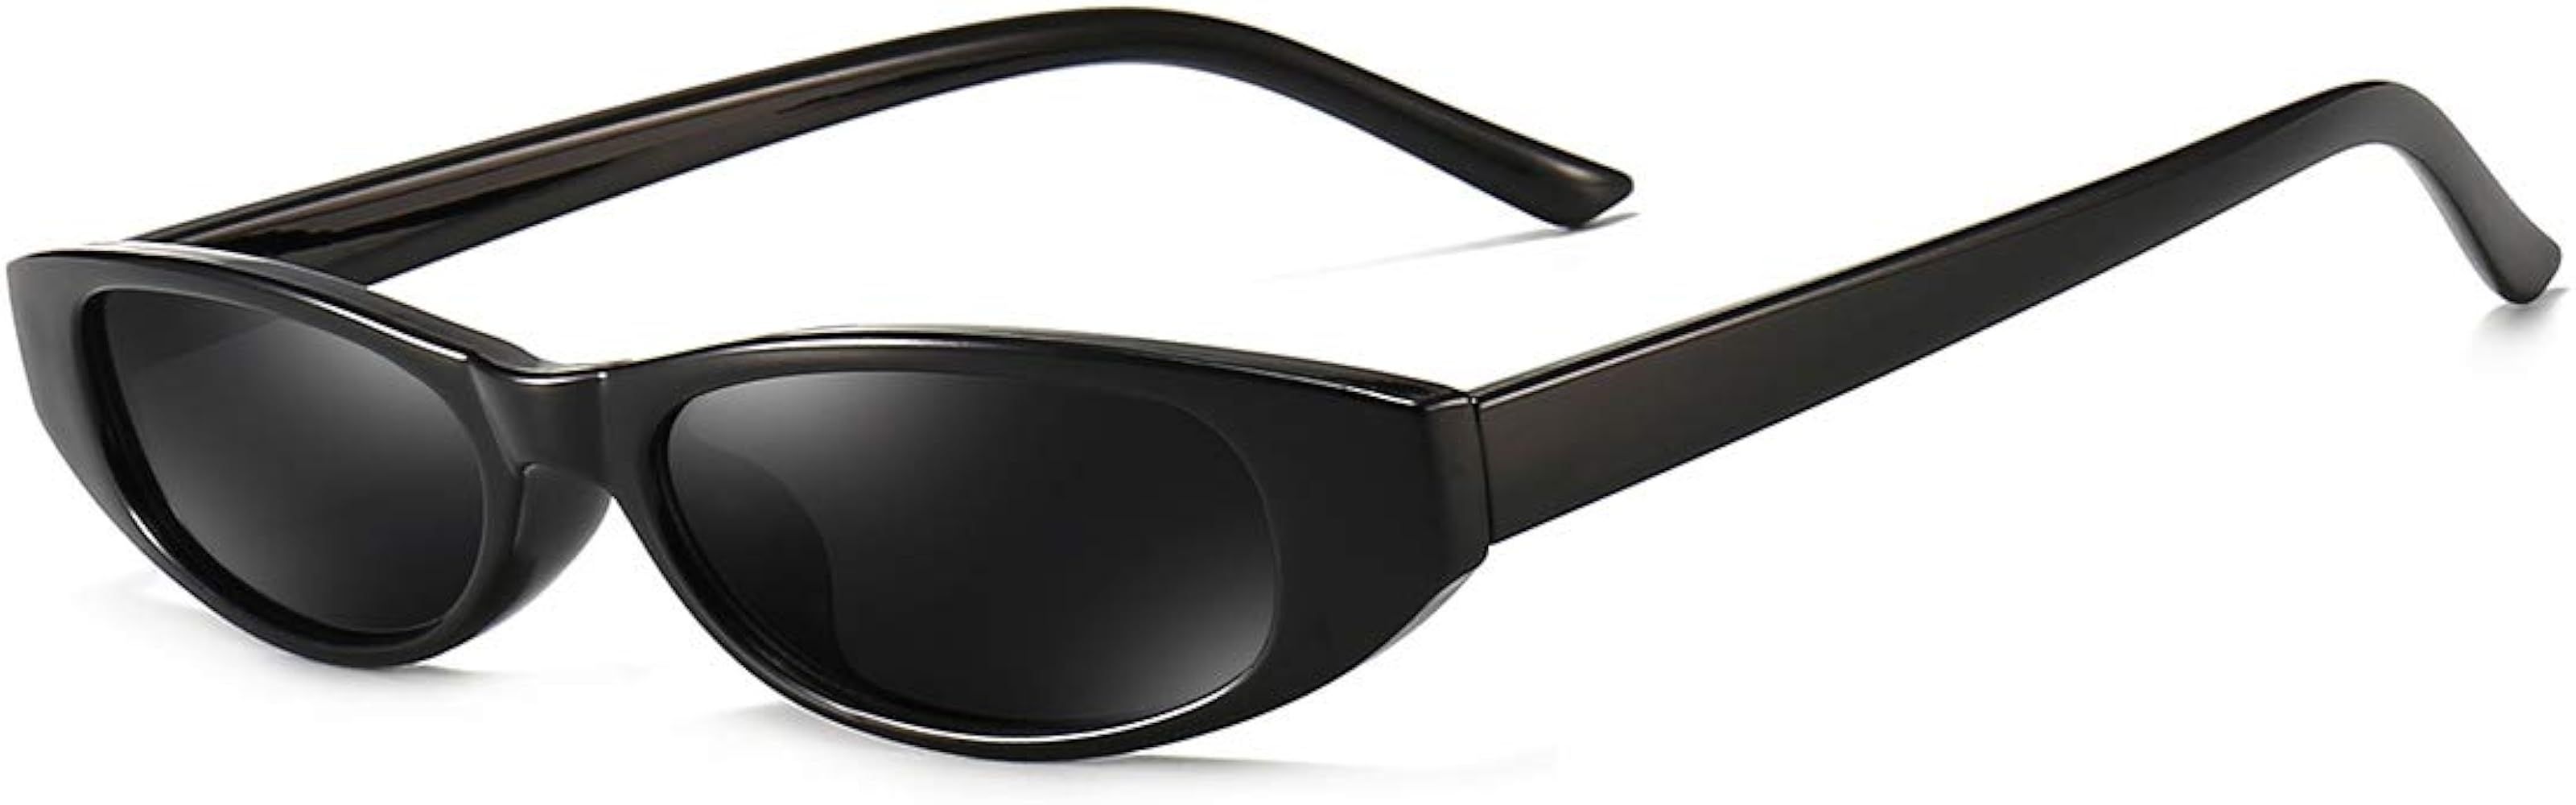 Dollger Retro Rectangle Sunglasses for Women Small Clout Goggles Fashion Designer Cool Square Sha... | Amazon (US)